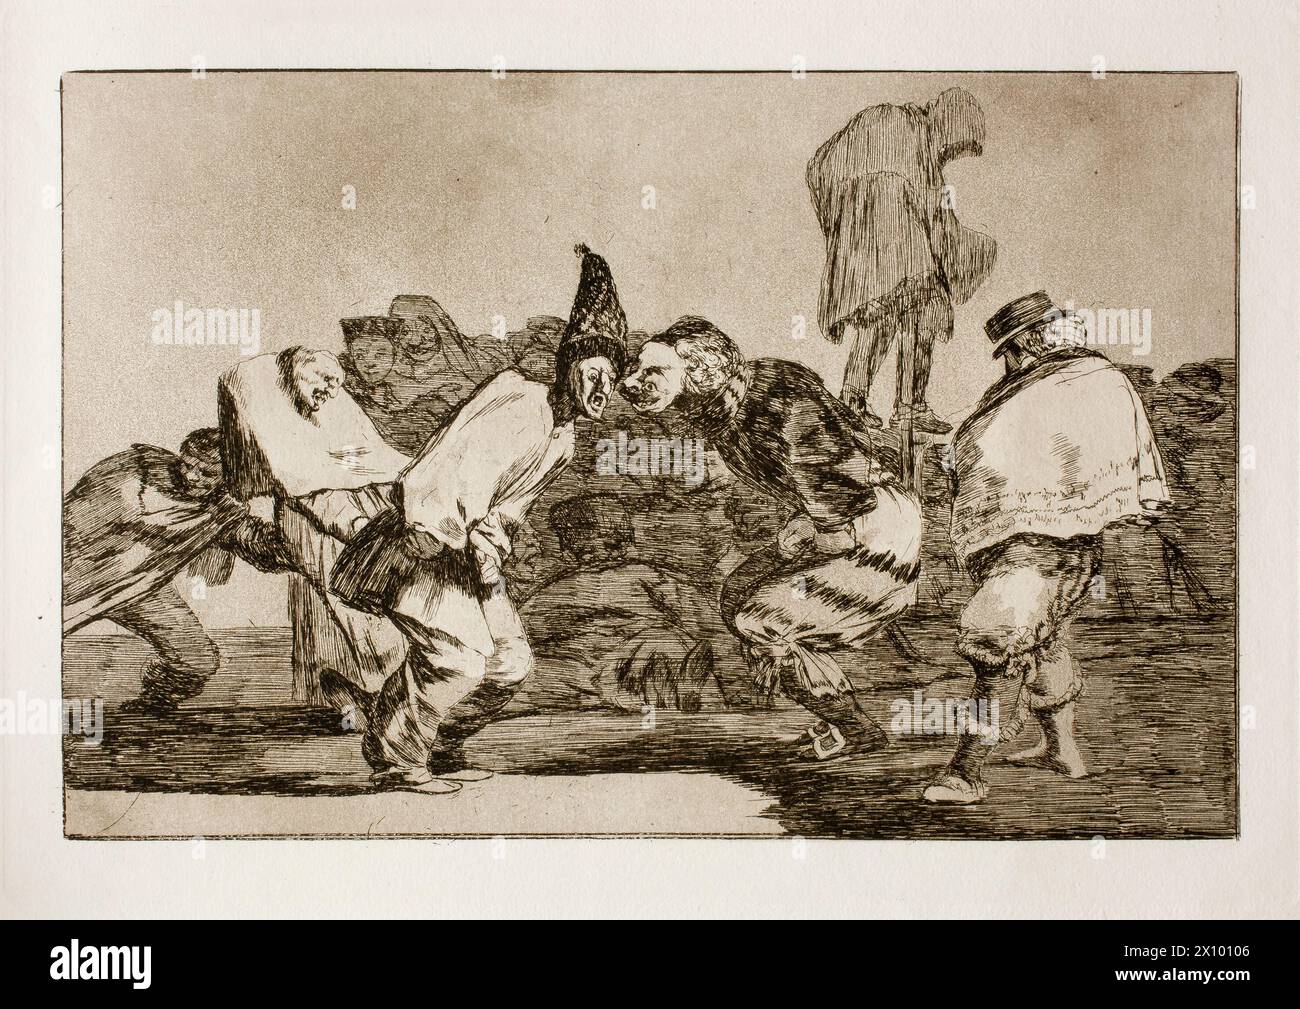 Los disparates (le follie), noto anche come Proverbios (Proverbi) o Sueños (sogni), è una serie di stampe in acquatinta e acquatinta, con ritocco in punta di secco e incisione, create dal pittore e incisore spagnolo Francisco Goya tra il 1815 e il 1823 Foto Stock